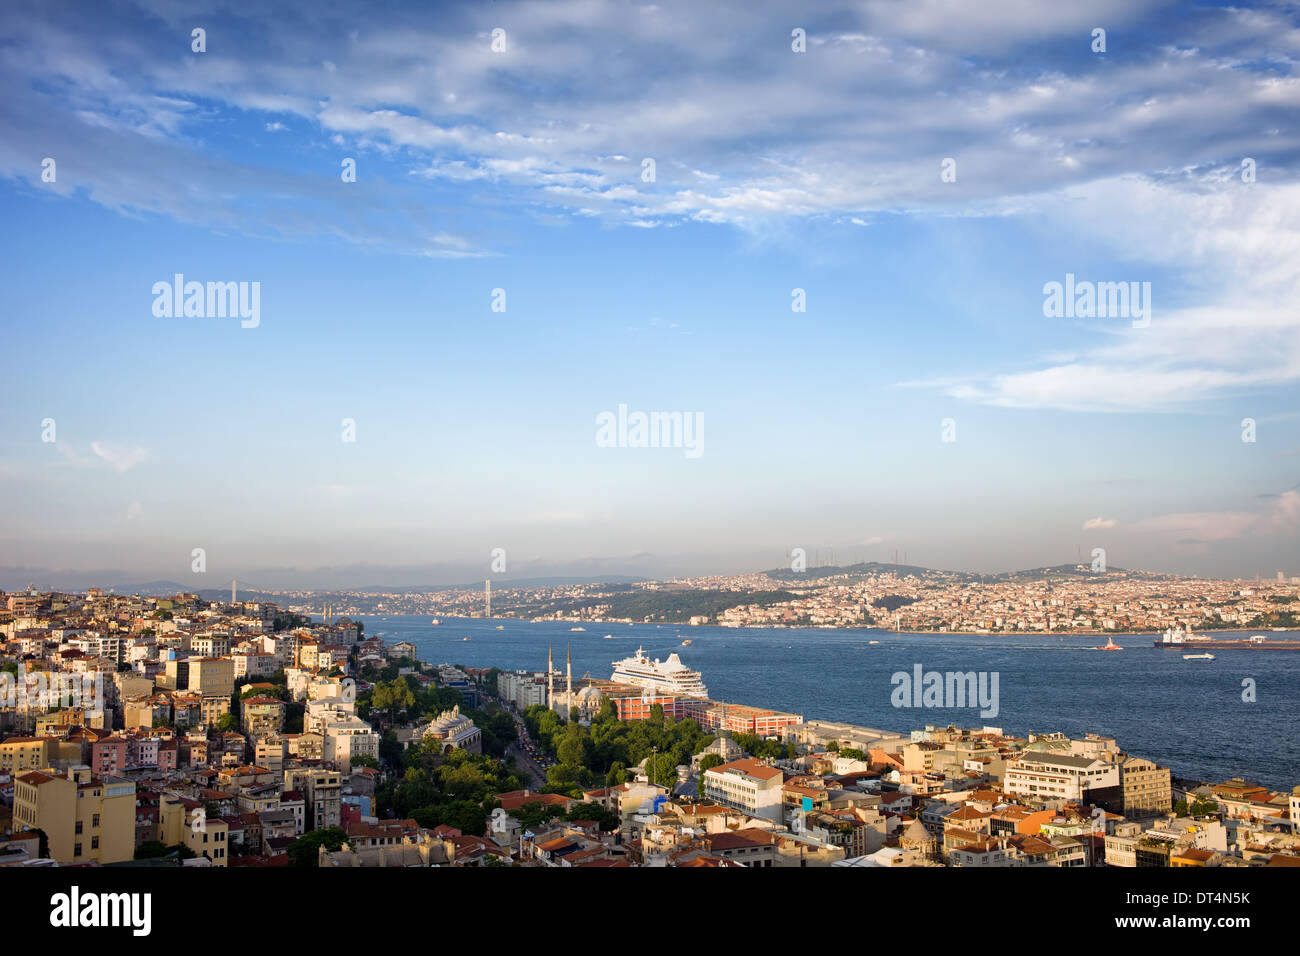 Istanbul-Stadt in der Türkei, Bosporus-Meerenge zwischen Beyoglu und Üsküdar Bezirk, am späten Nachmittag. Stockfoto